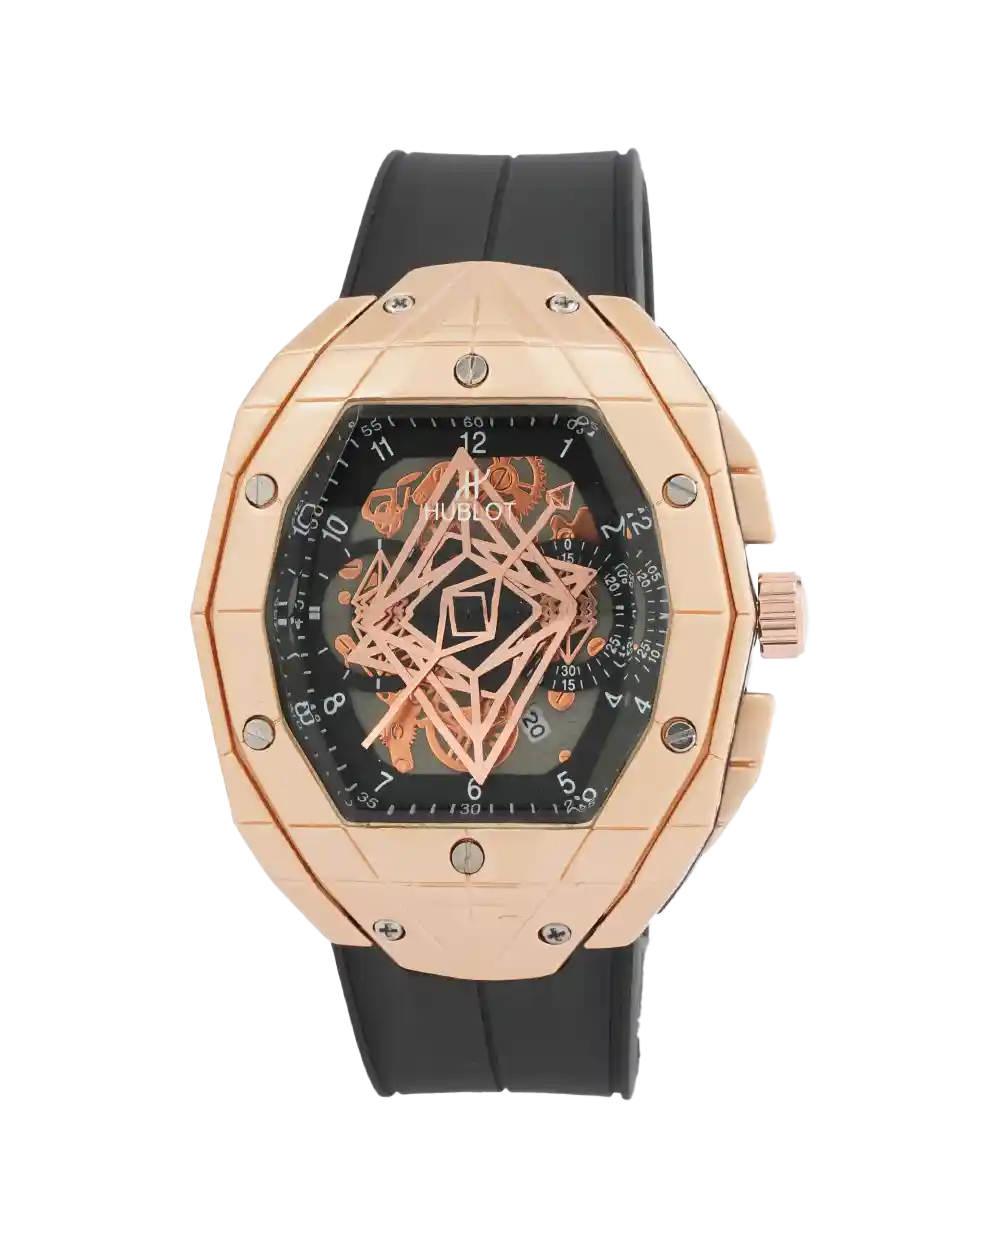 خرید ساعت مچی مردانه هابلوت HUBLOT طرح کهکشانی مدل 2095 رنگ مشکی و بند رابر رنگ ثابت بهترین قیمت به همراه ارسال رایگان و جعبه